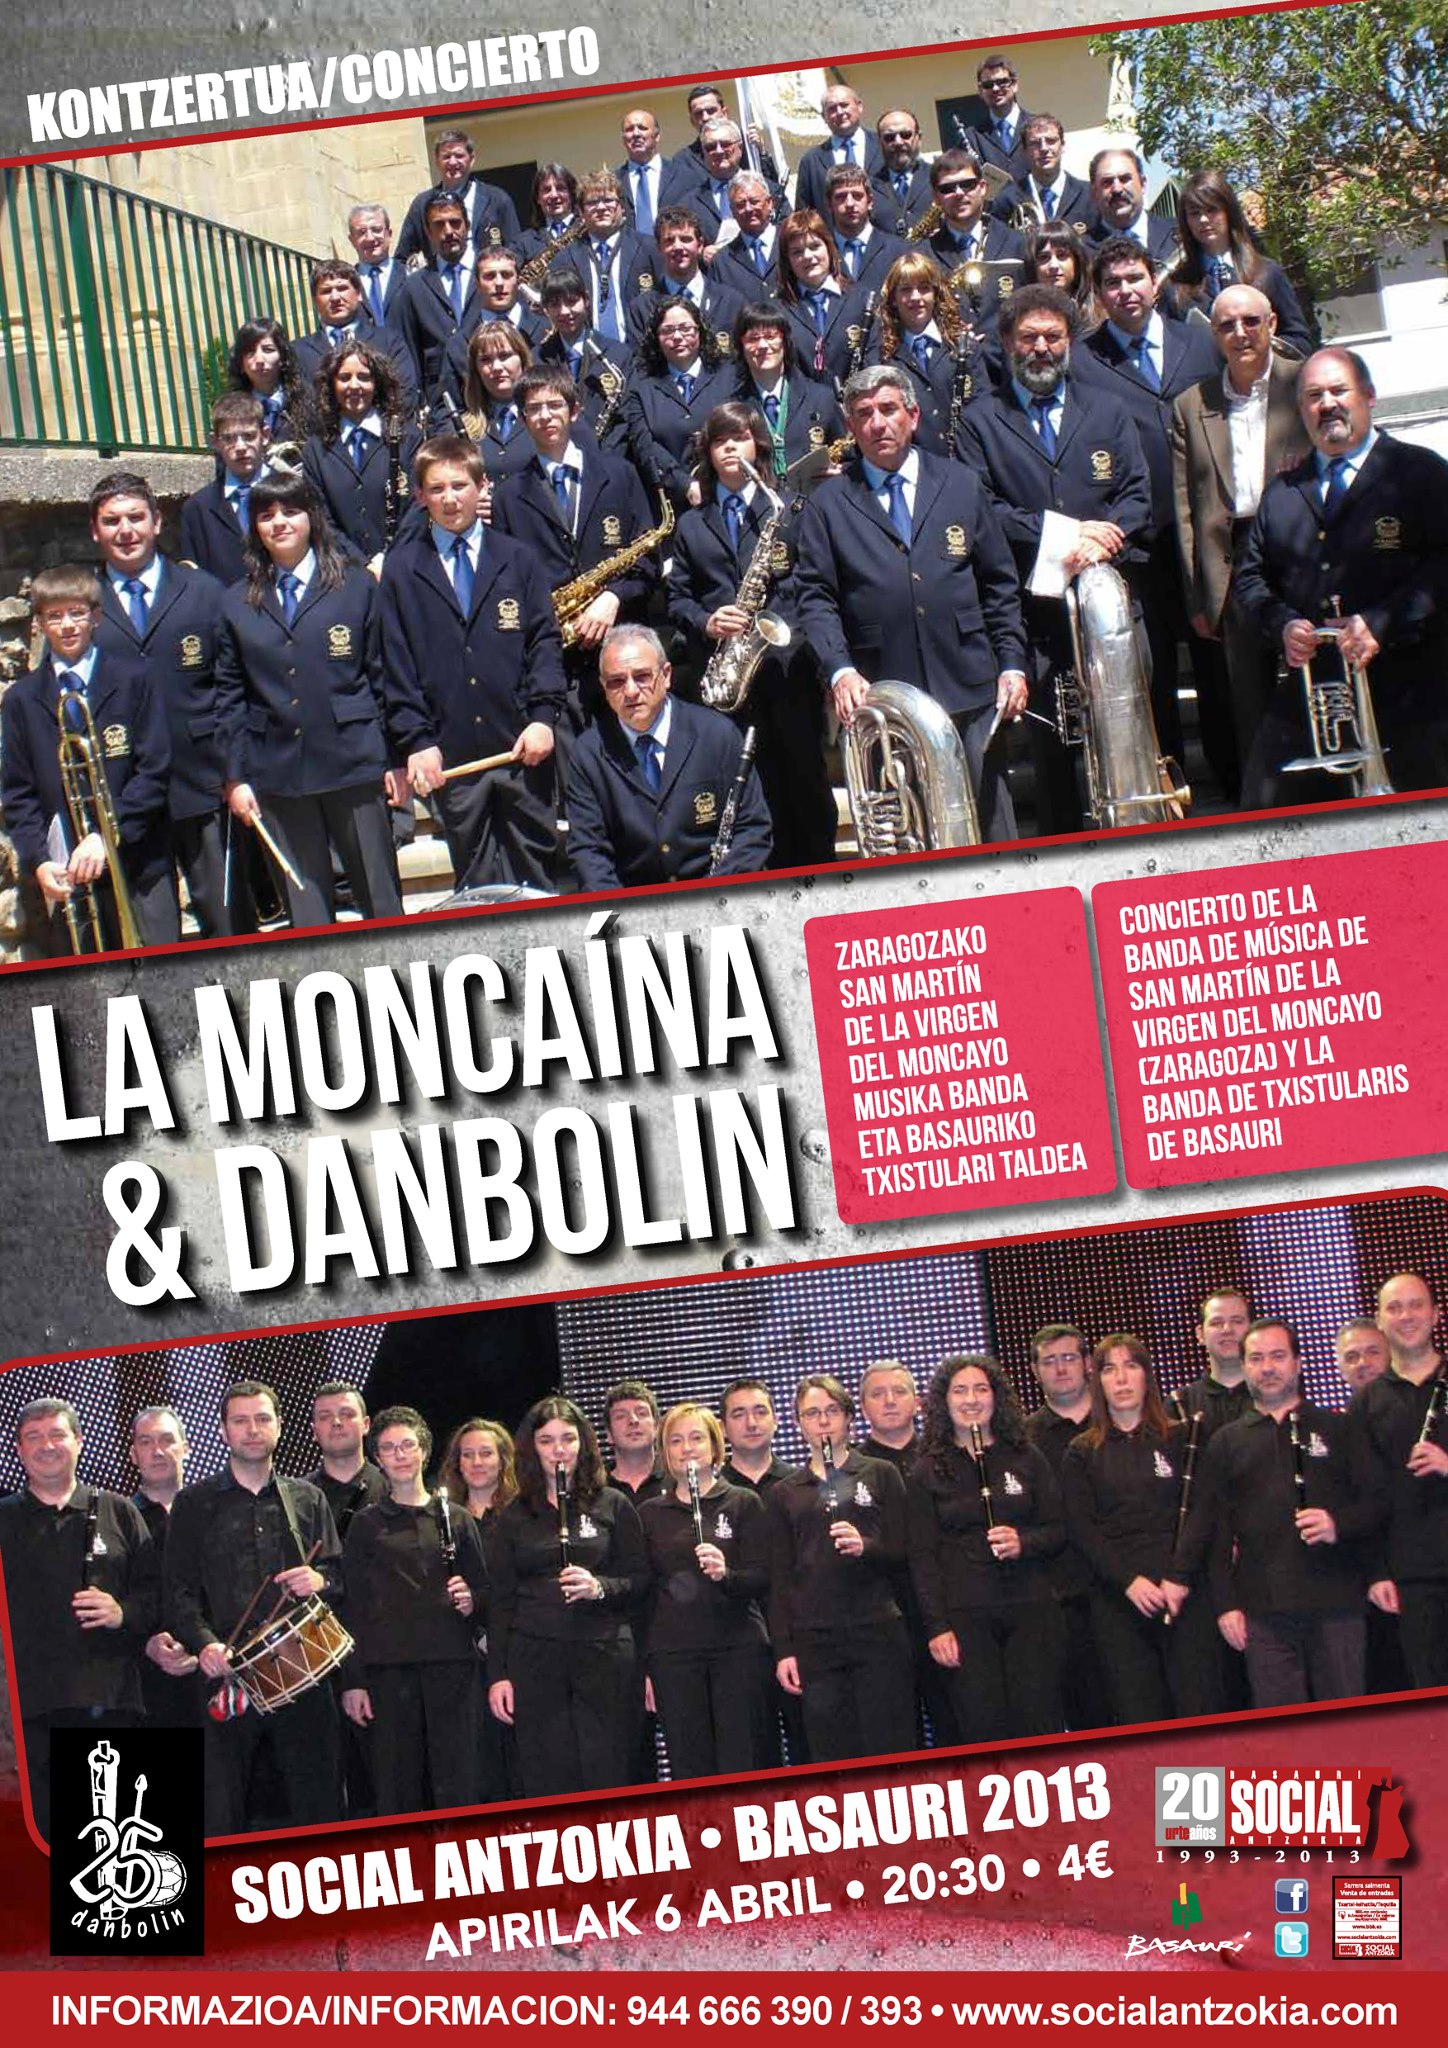 Cartel del concierto de Danbolin y La Mocaína de Zaragoza